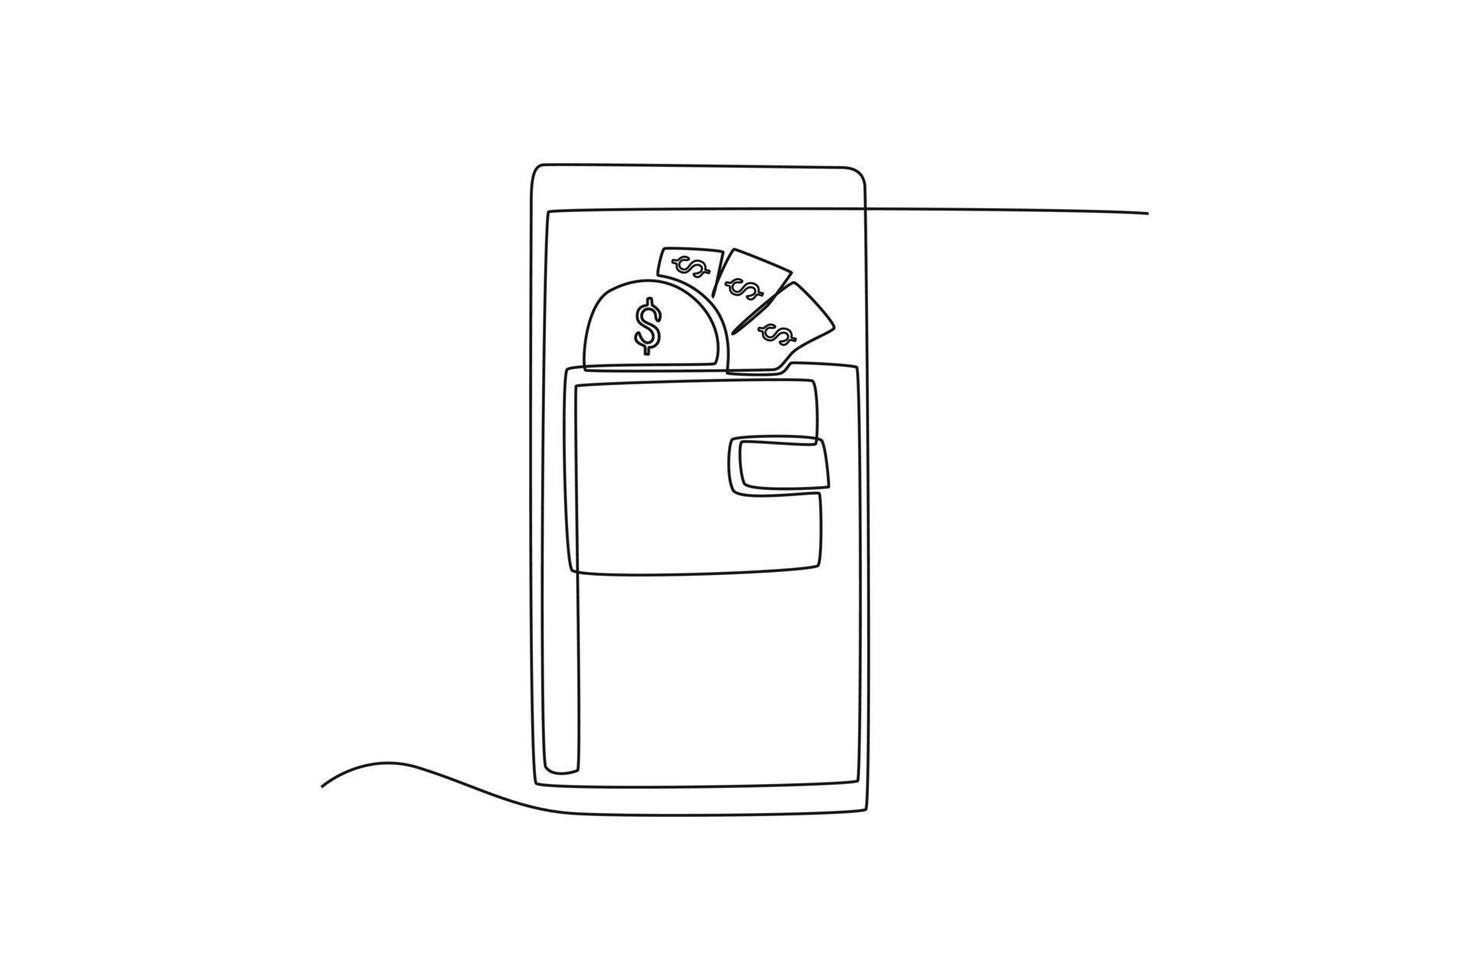 página de aplicación de billetera de dibujo de una sola línea en la pantalla del teléfono móvil. concepto de tecnología financiera. ilustración de vector gráfico de diseño de dibujo de línea continua.